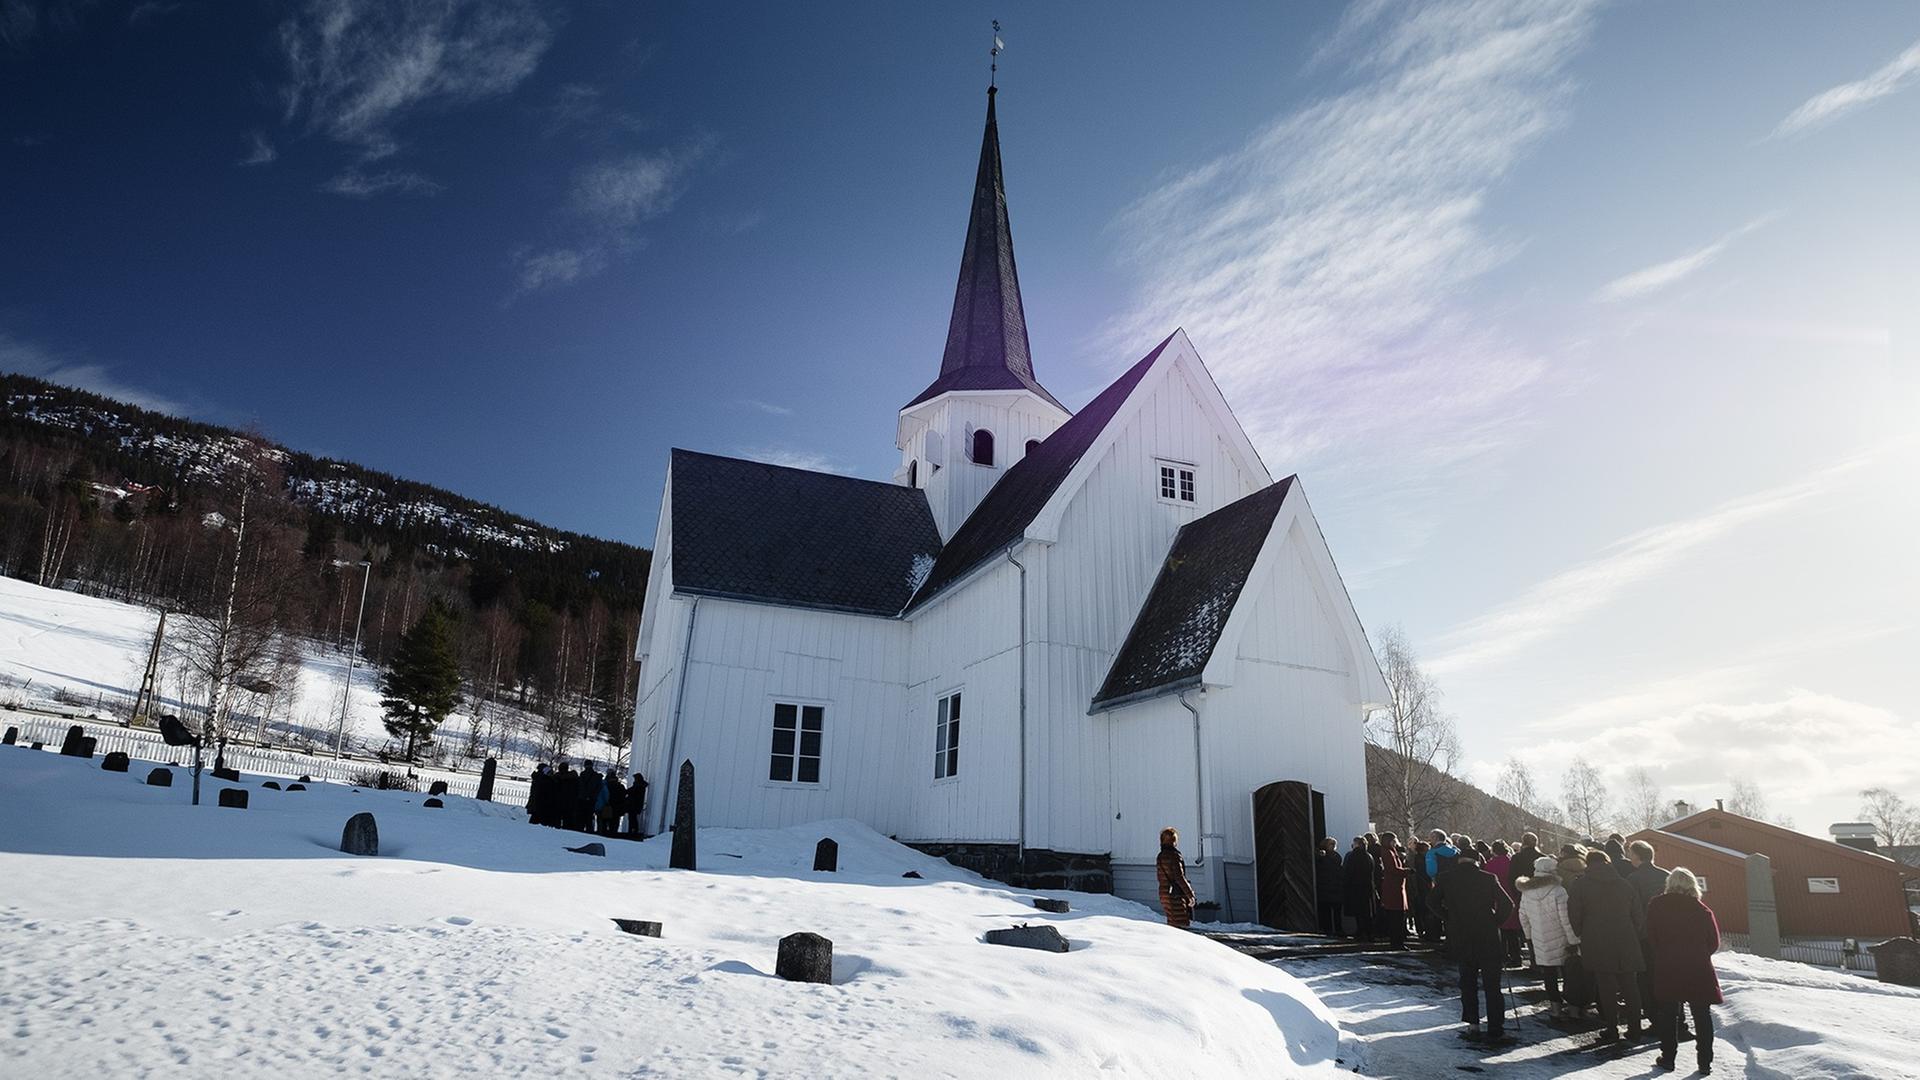 Menschenschlange vor einer norwegischen Bergkirche im Schnee